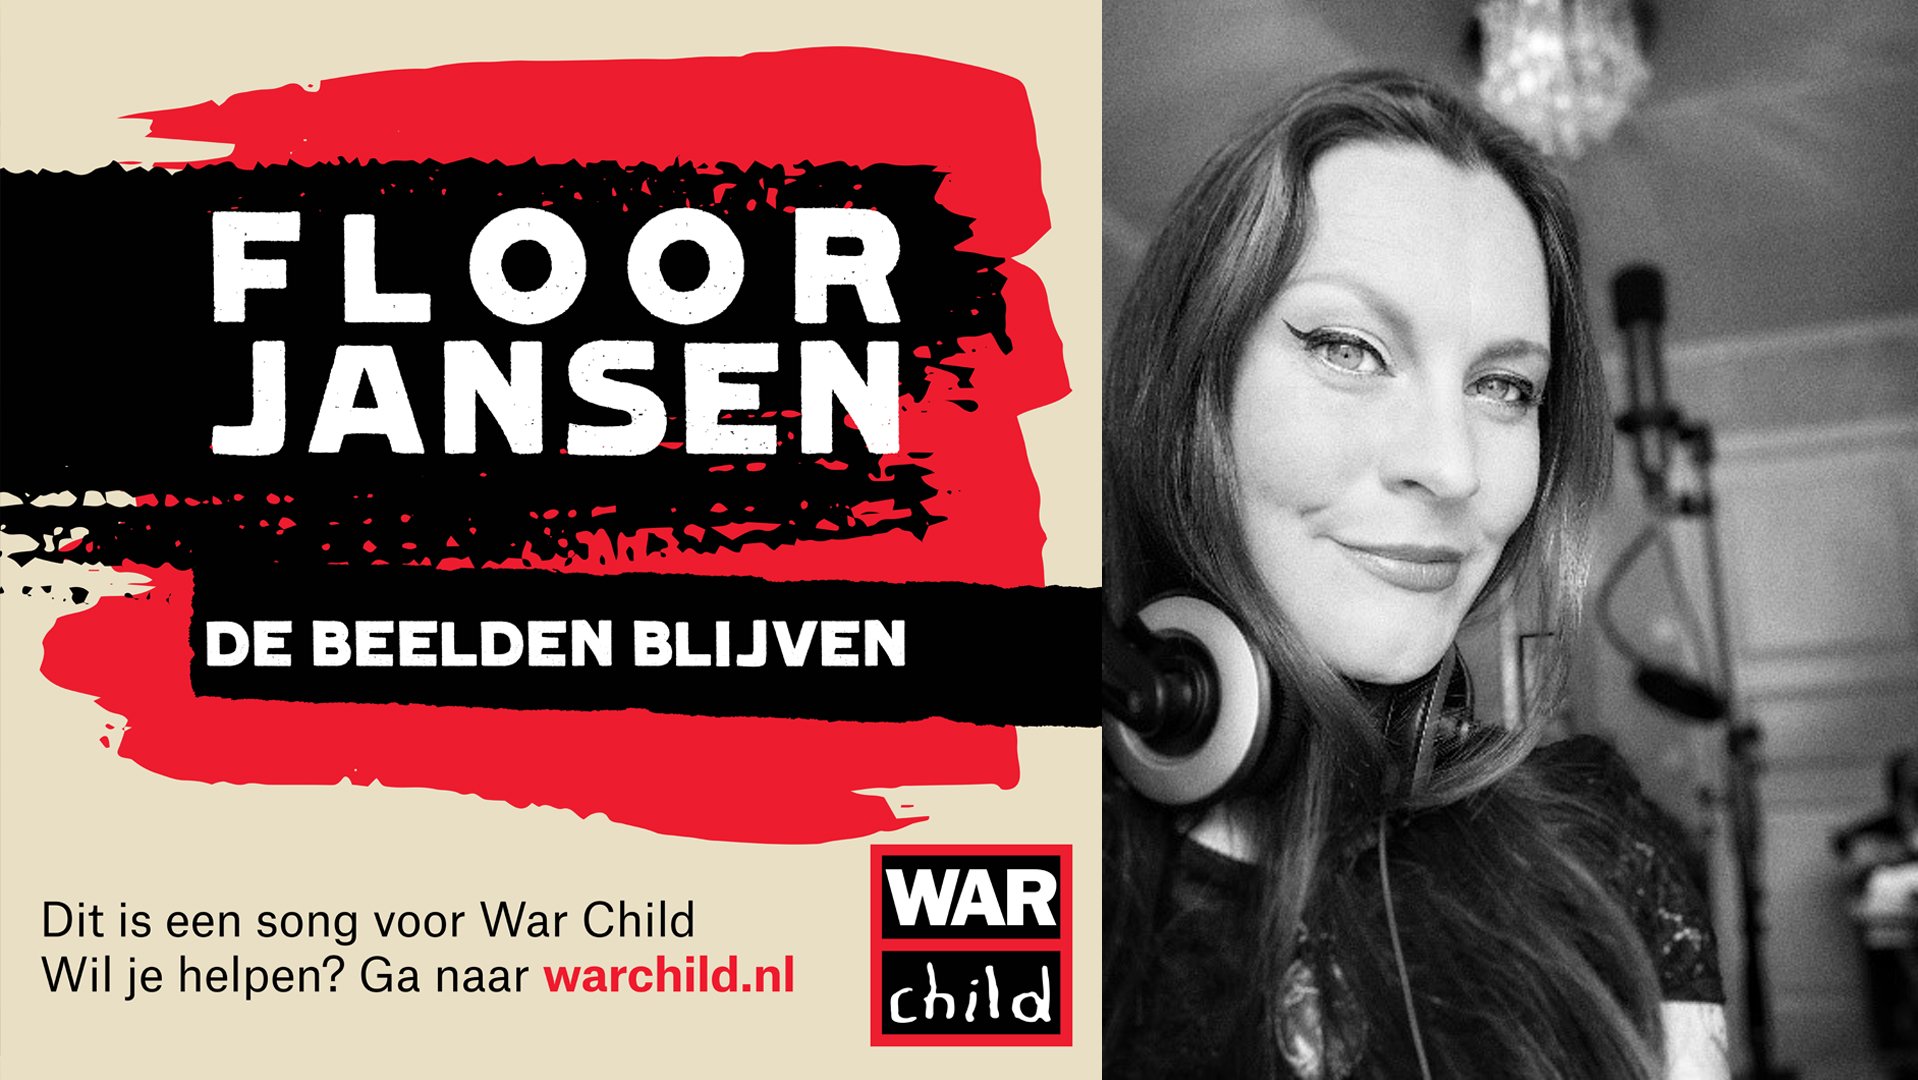 Floor Jansen - De Beelden Blijven voor War Child titelsong